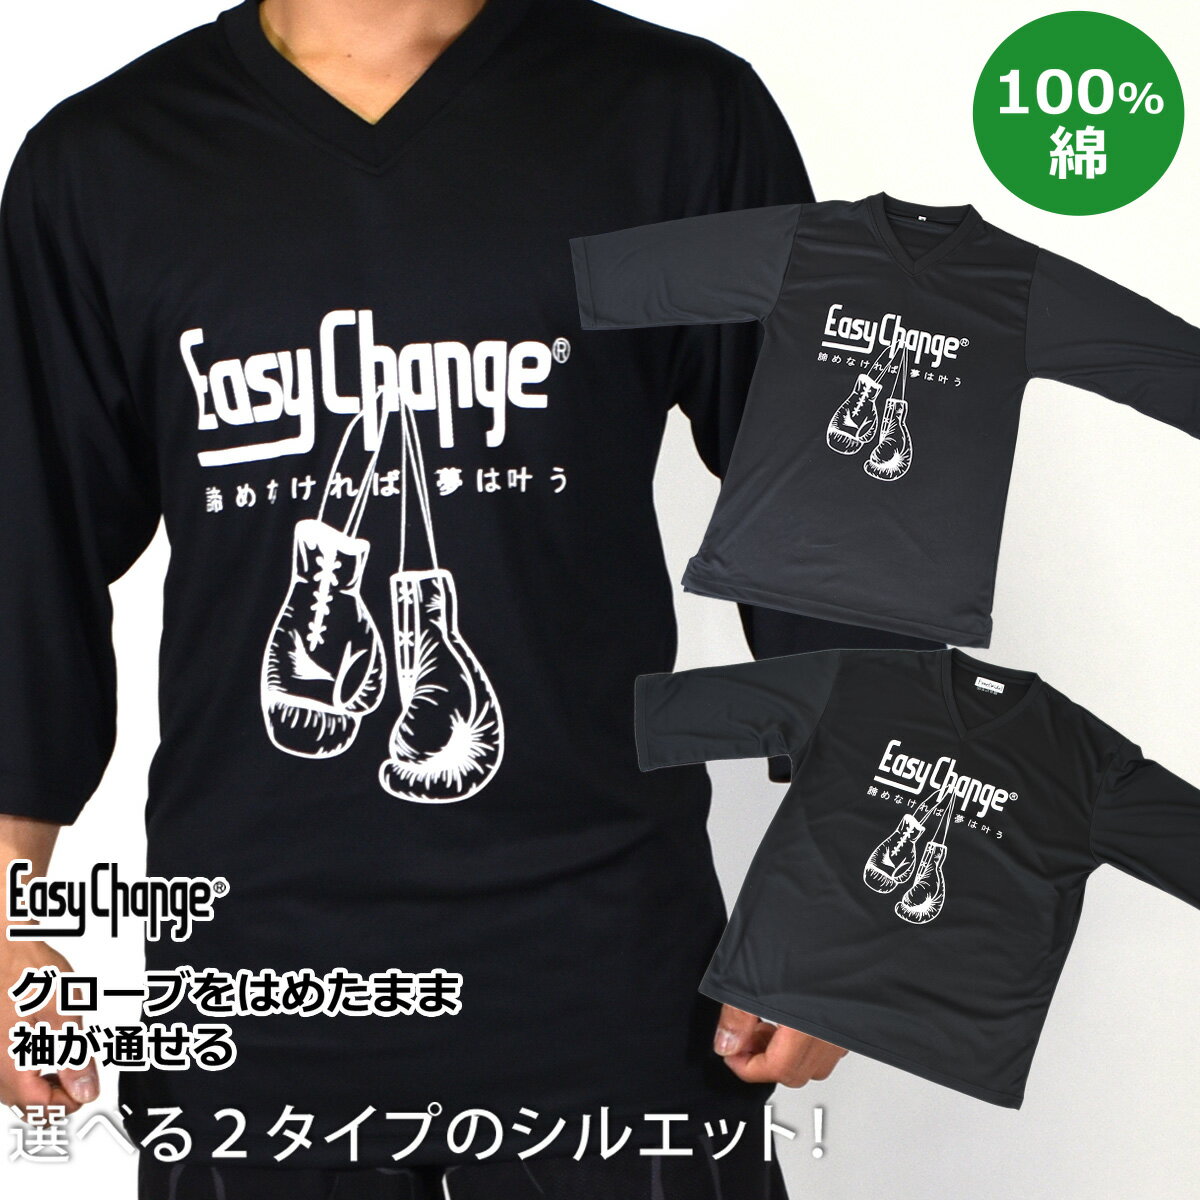 Tシャツ EasyChange 綿100 メンズ レディース 男女兼用 半袖 ボクシング柄 ワイド タイト ブラック